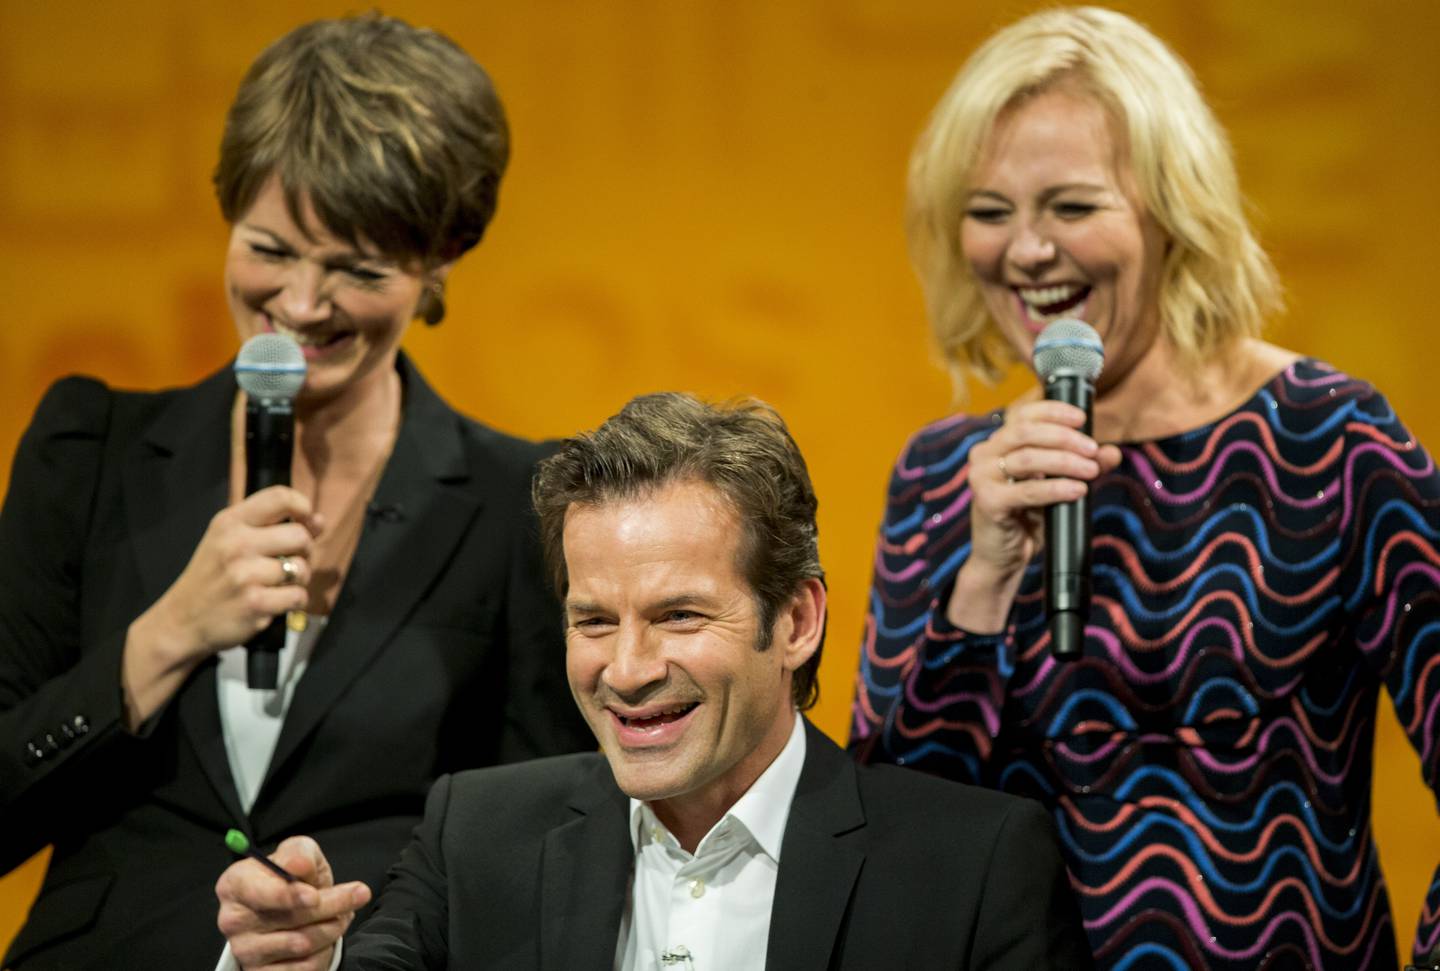 Programleder Jon Almaas under sin siste innspilling av Nytt på nytt. Linn Skåber og Pernille Sørensen (t.v.) i bakgrunnen.